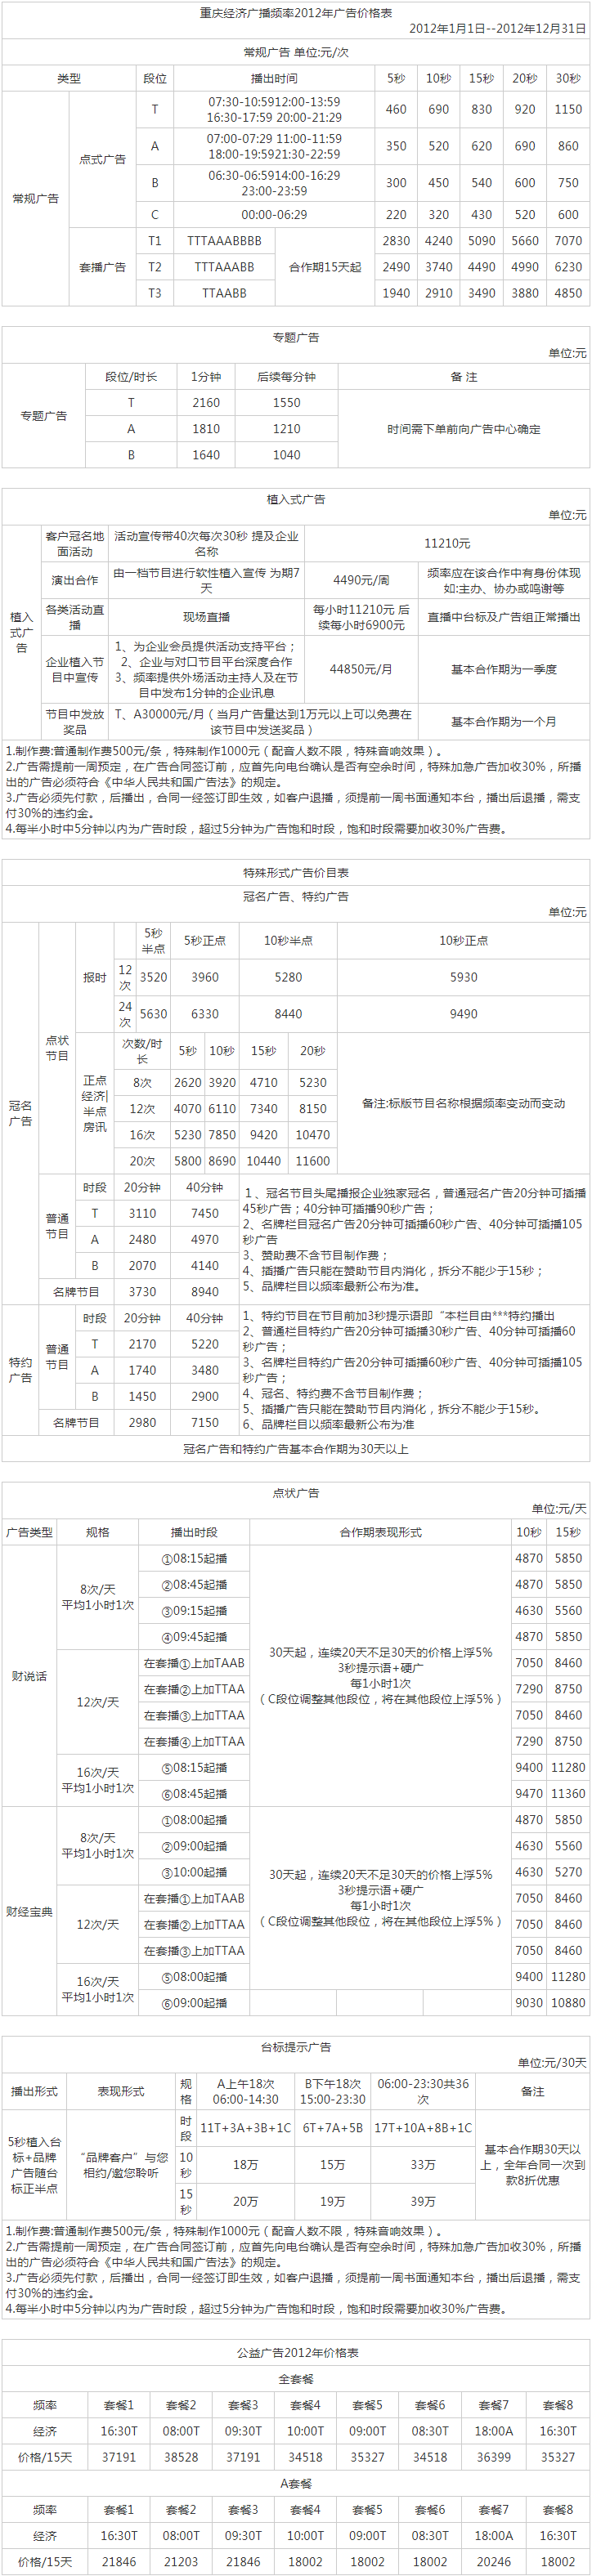 2012重庆人民广播电台经济频道 FM101.5广告报价表.png